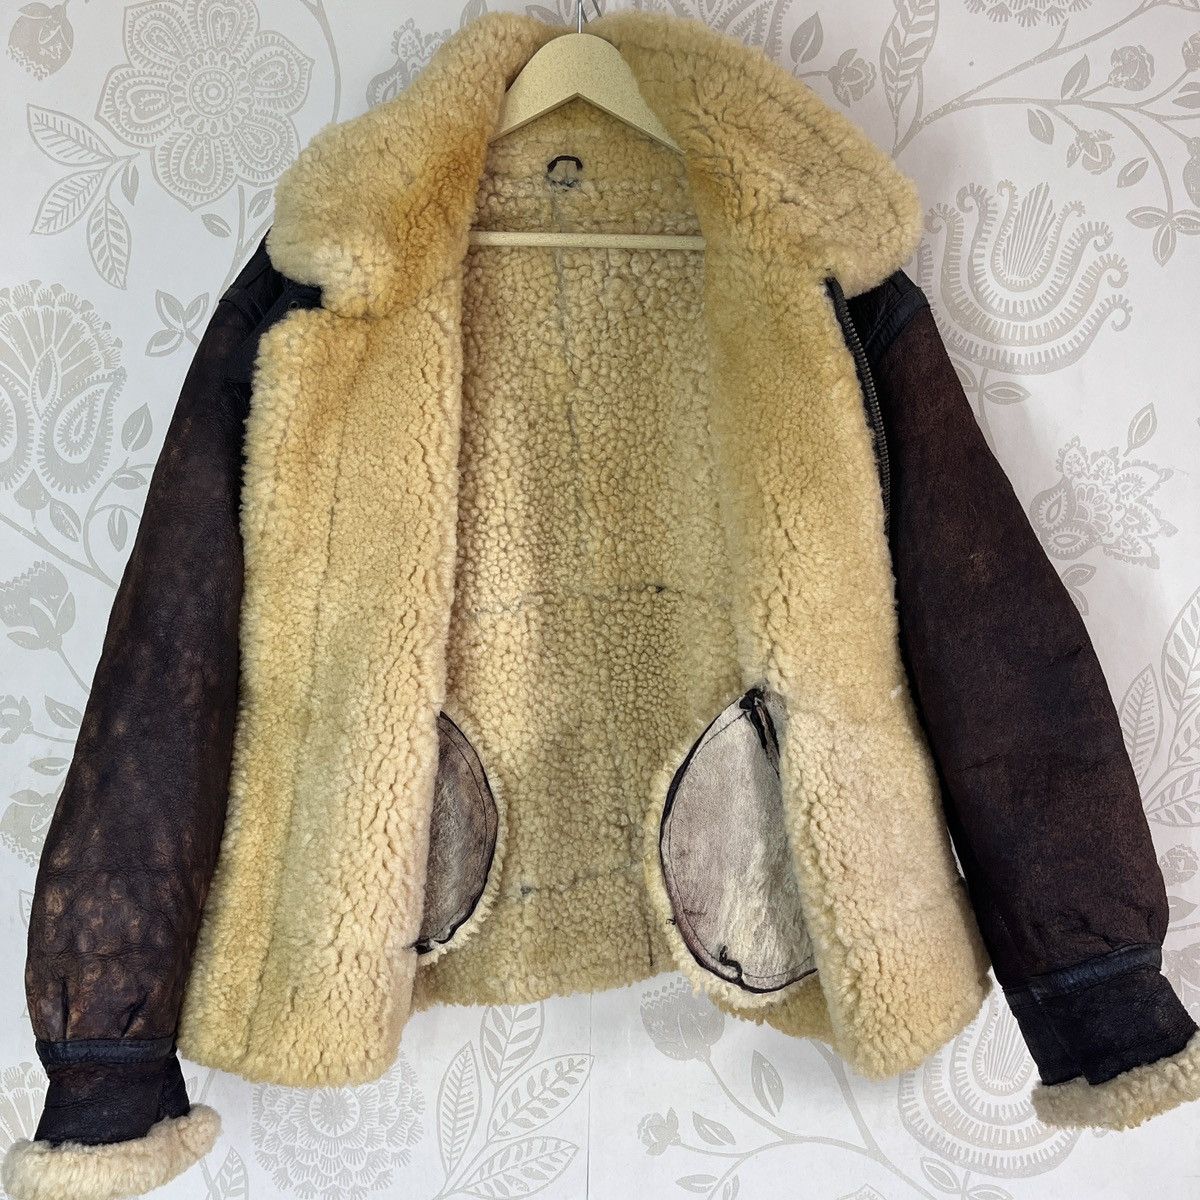 Vintage - Resident Evil B3 SheepSkin Leather Coat Jacket Japan - 18